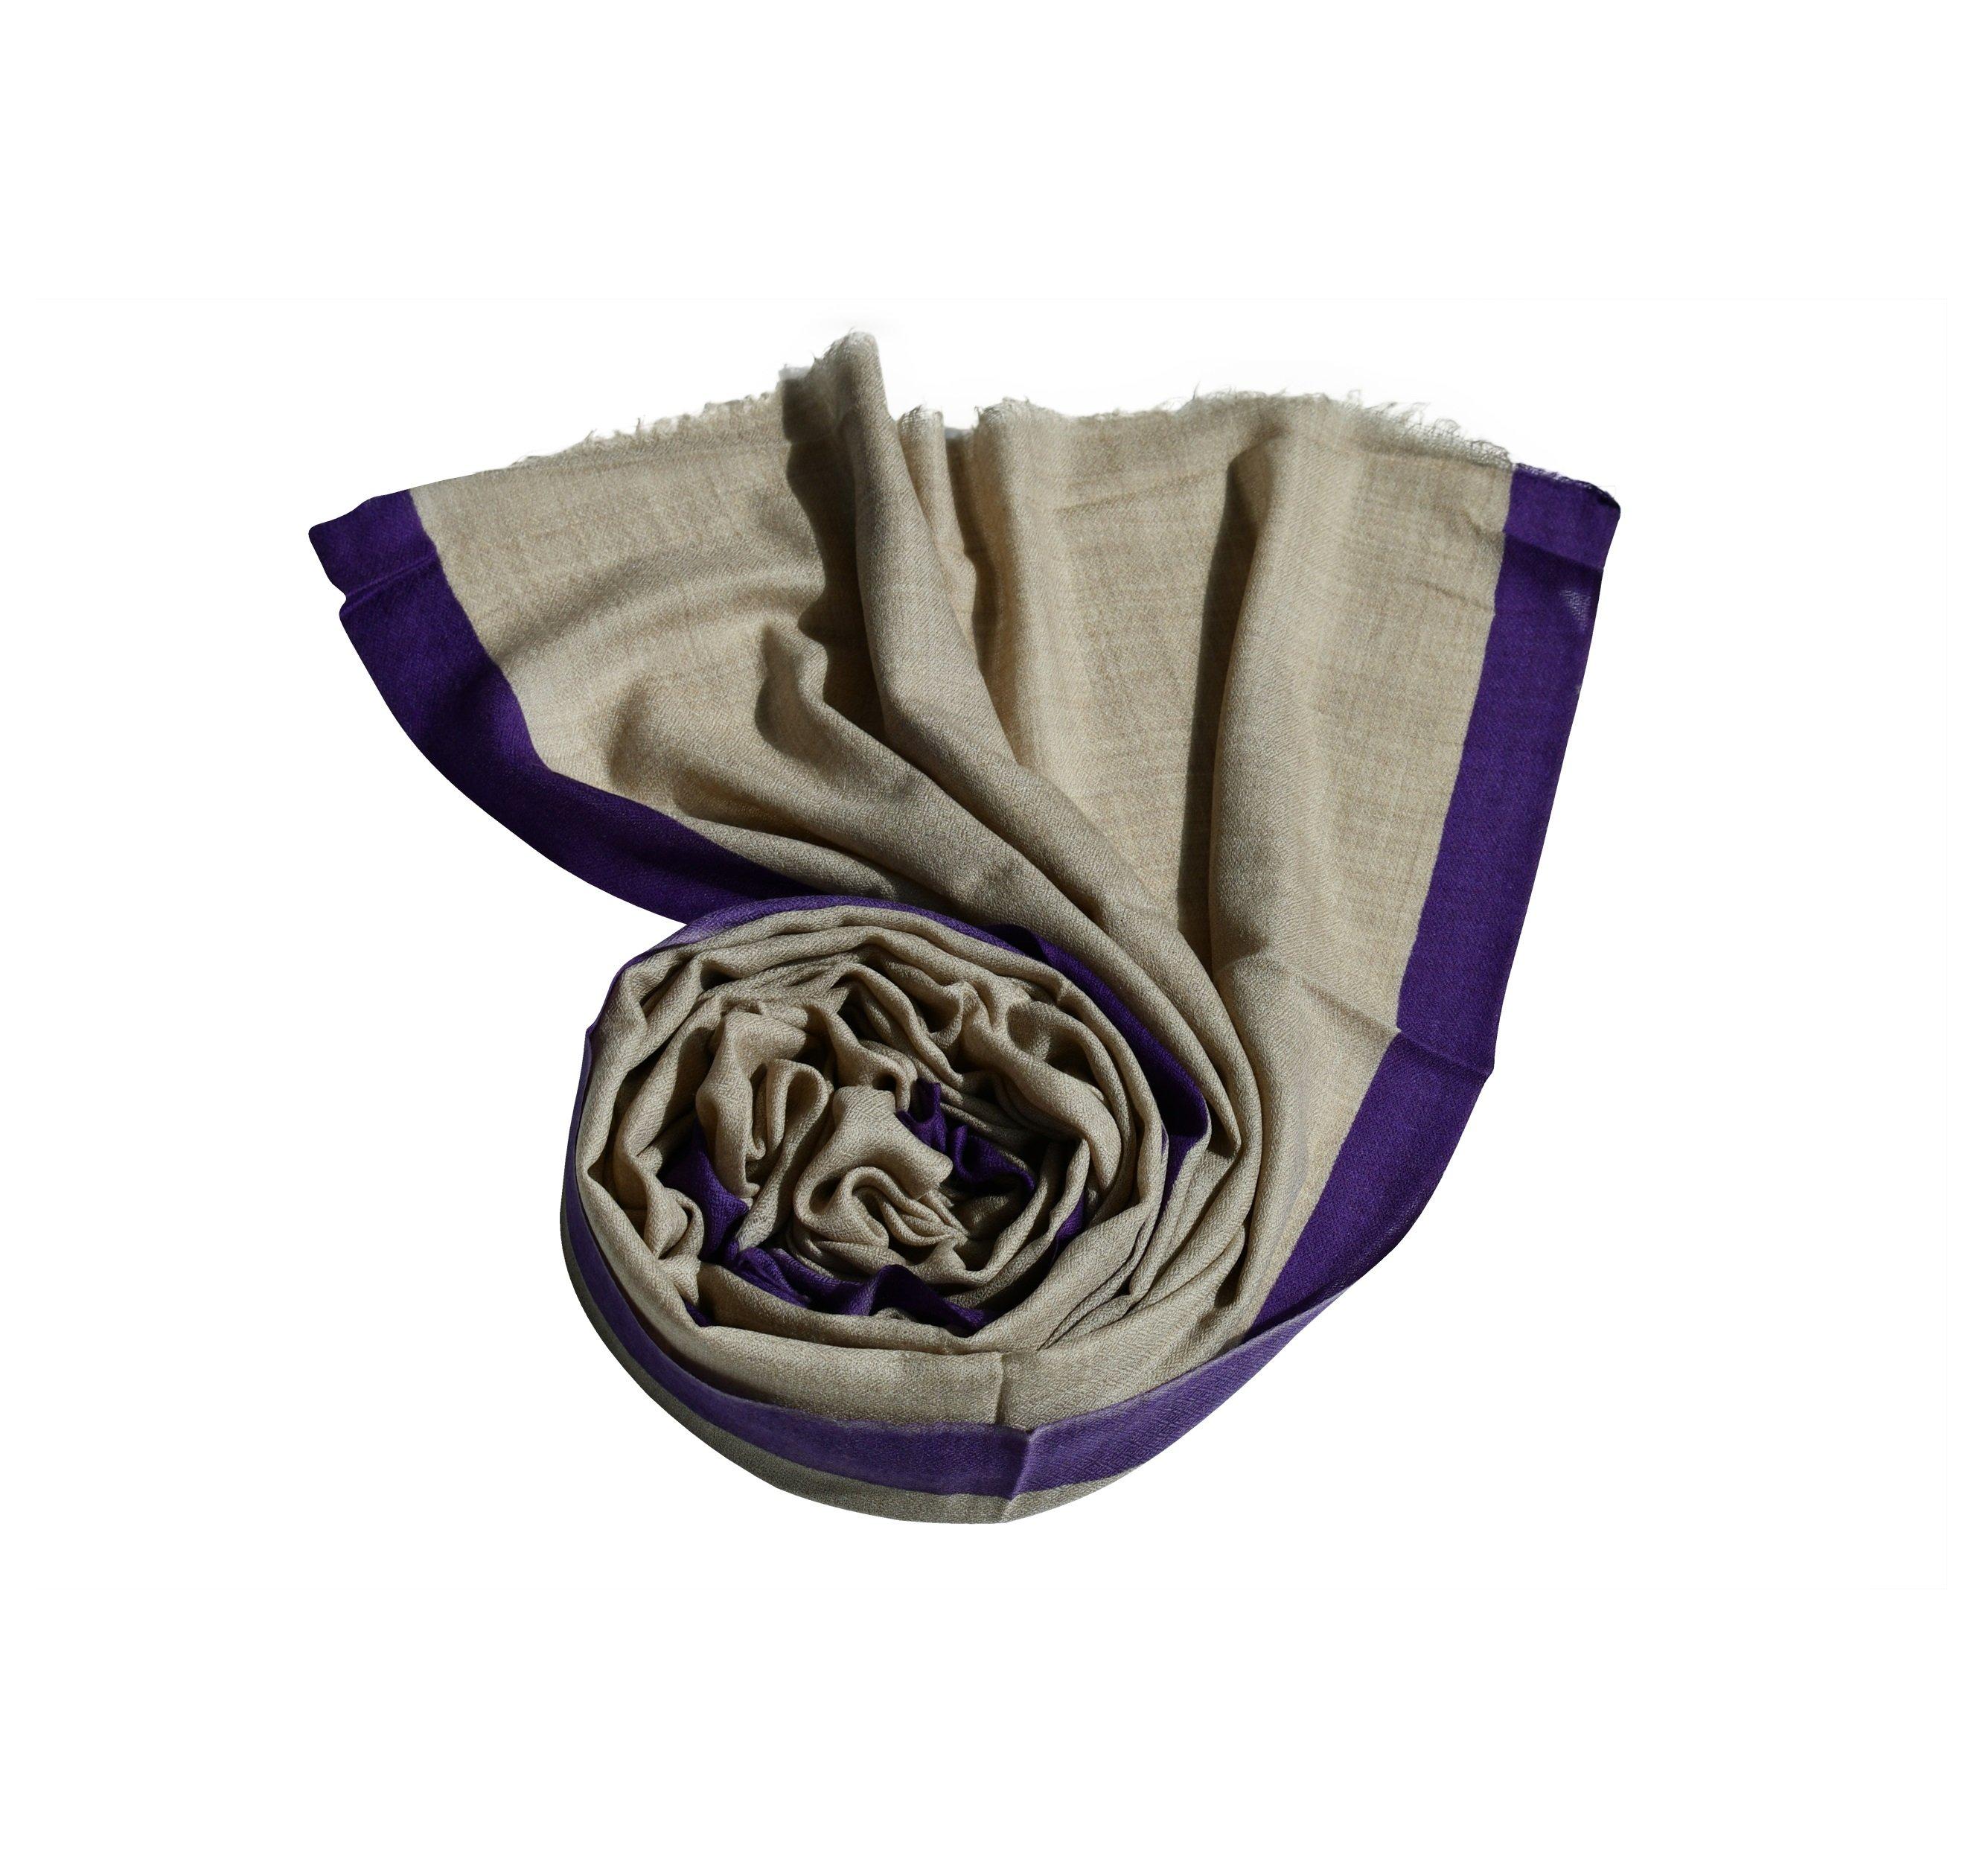 Шерстяной шарф простого дизайна, двухцветный, носится на шее и голове, размер: 210 x 75 см. Blue Chilli, фиолетовый